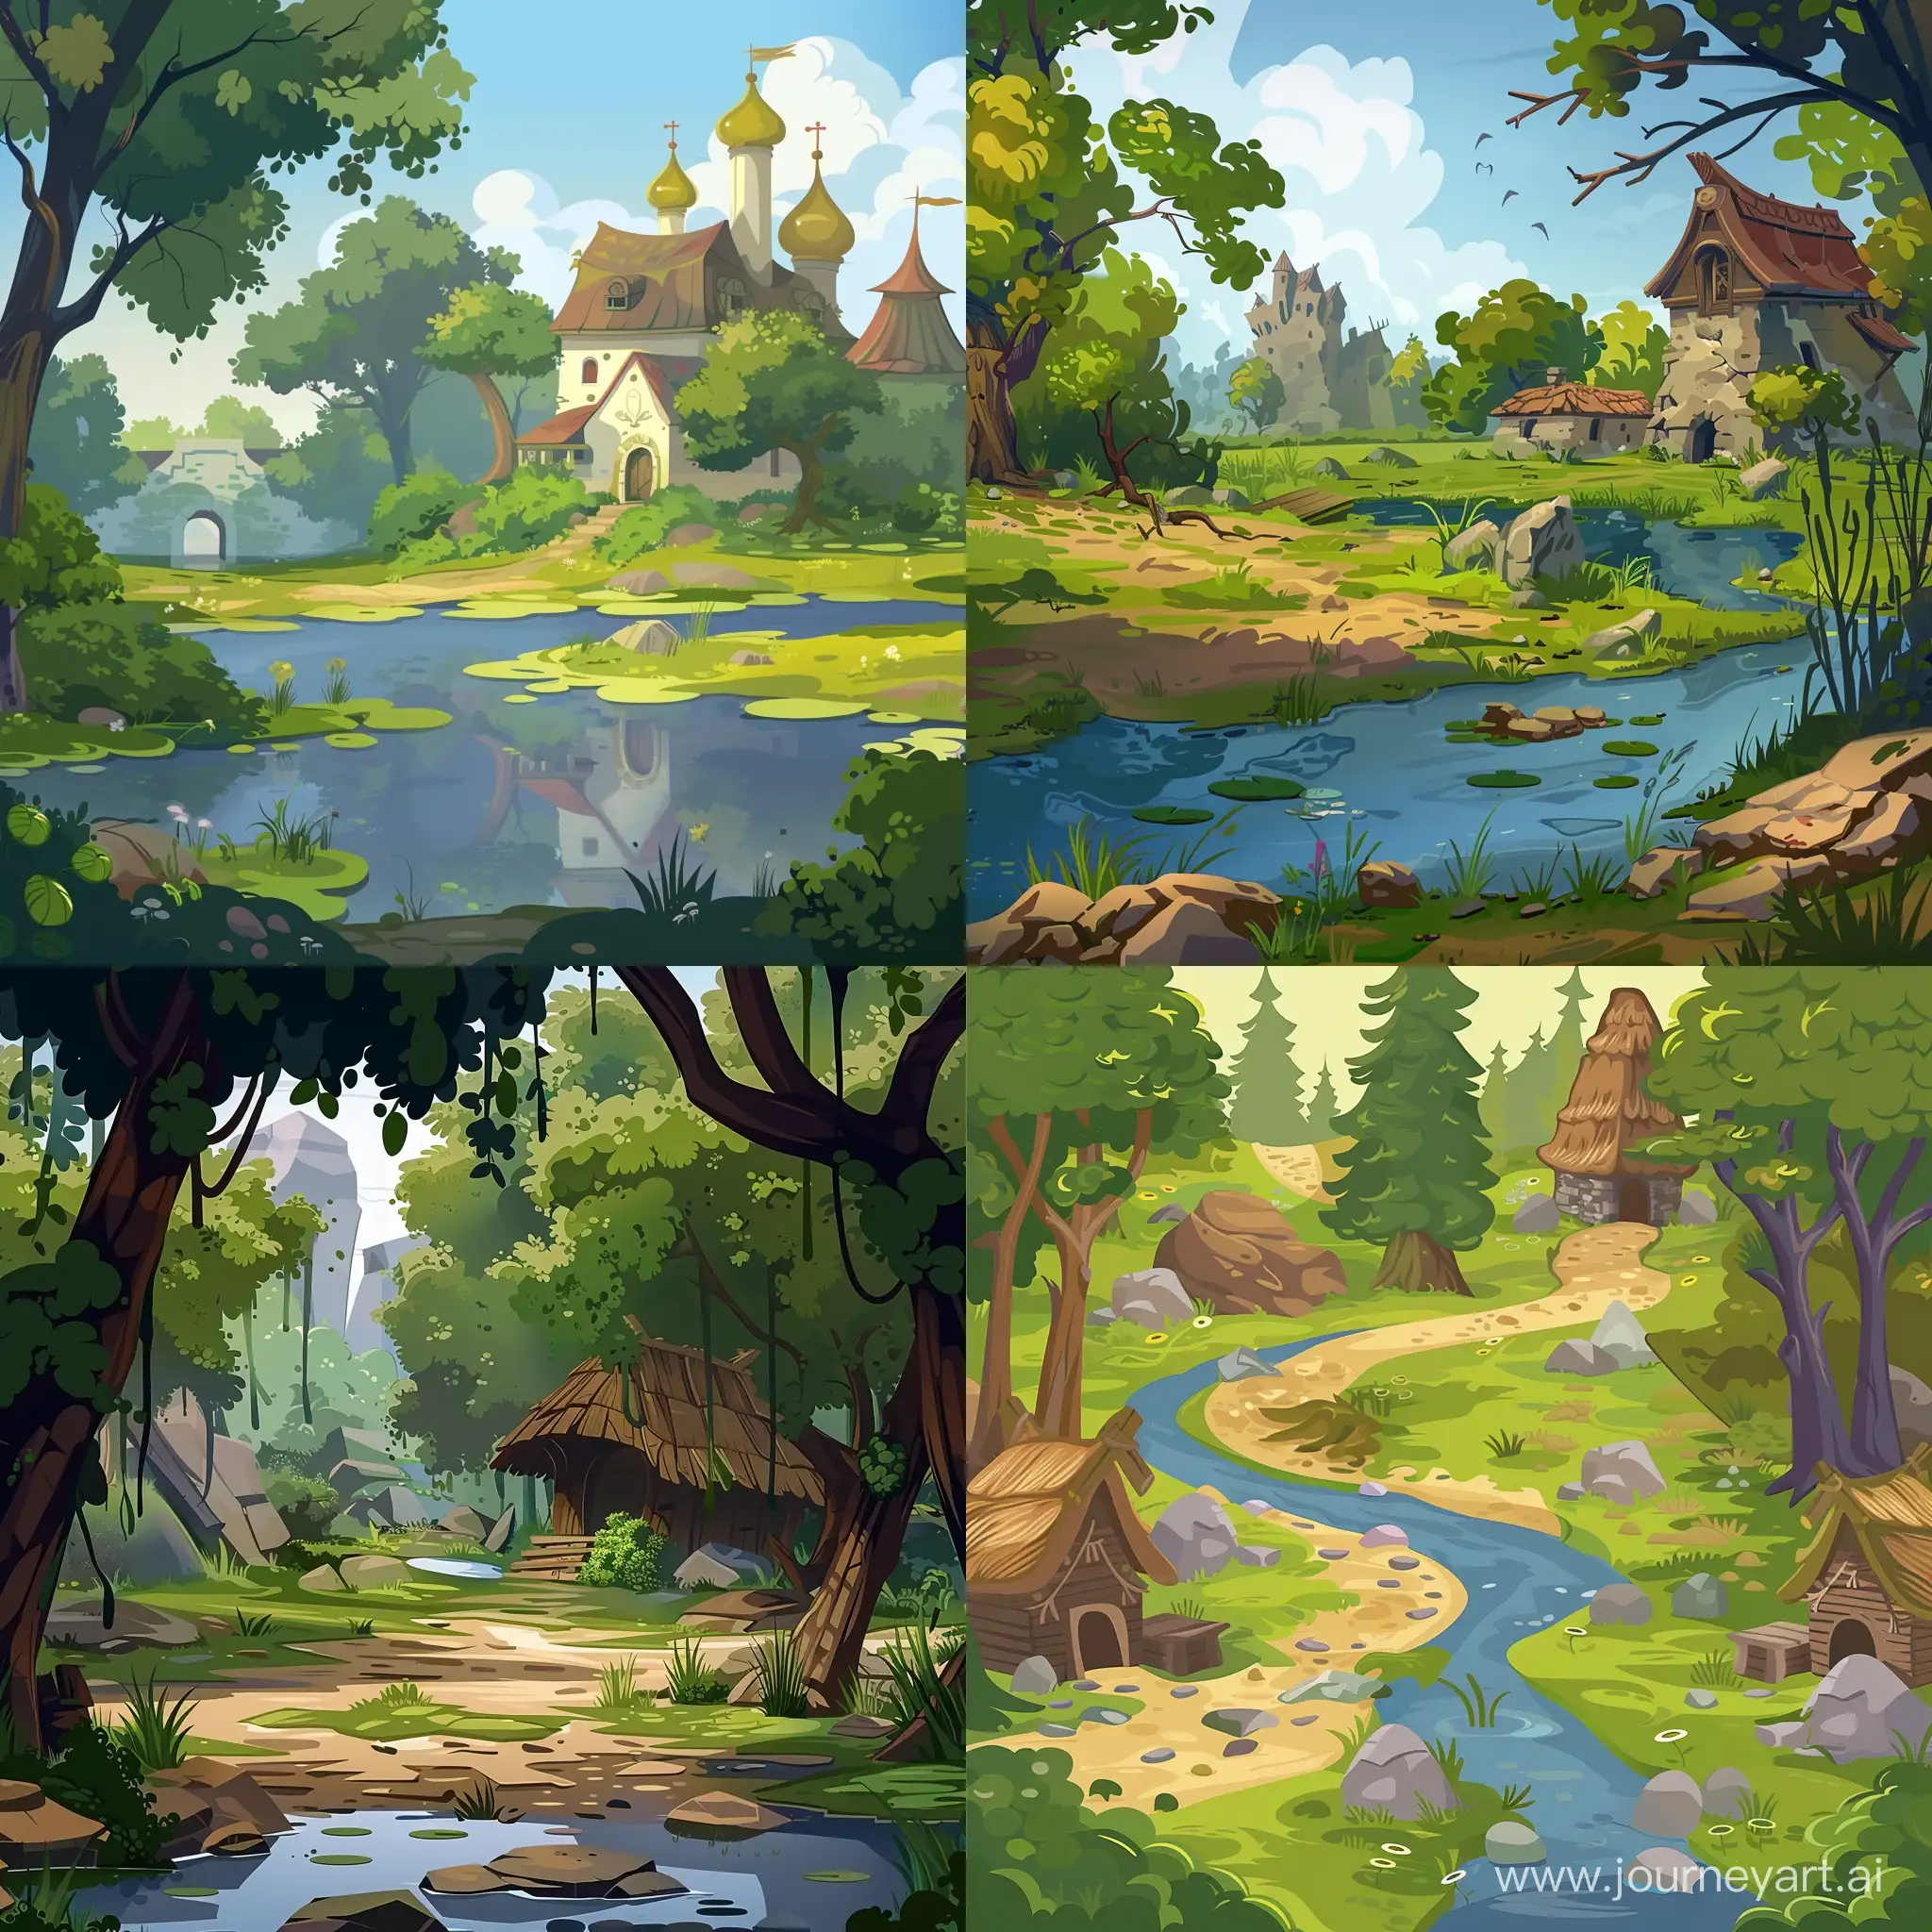 Локация для игры болото древней руси в стилистике мультфильма